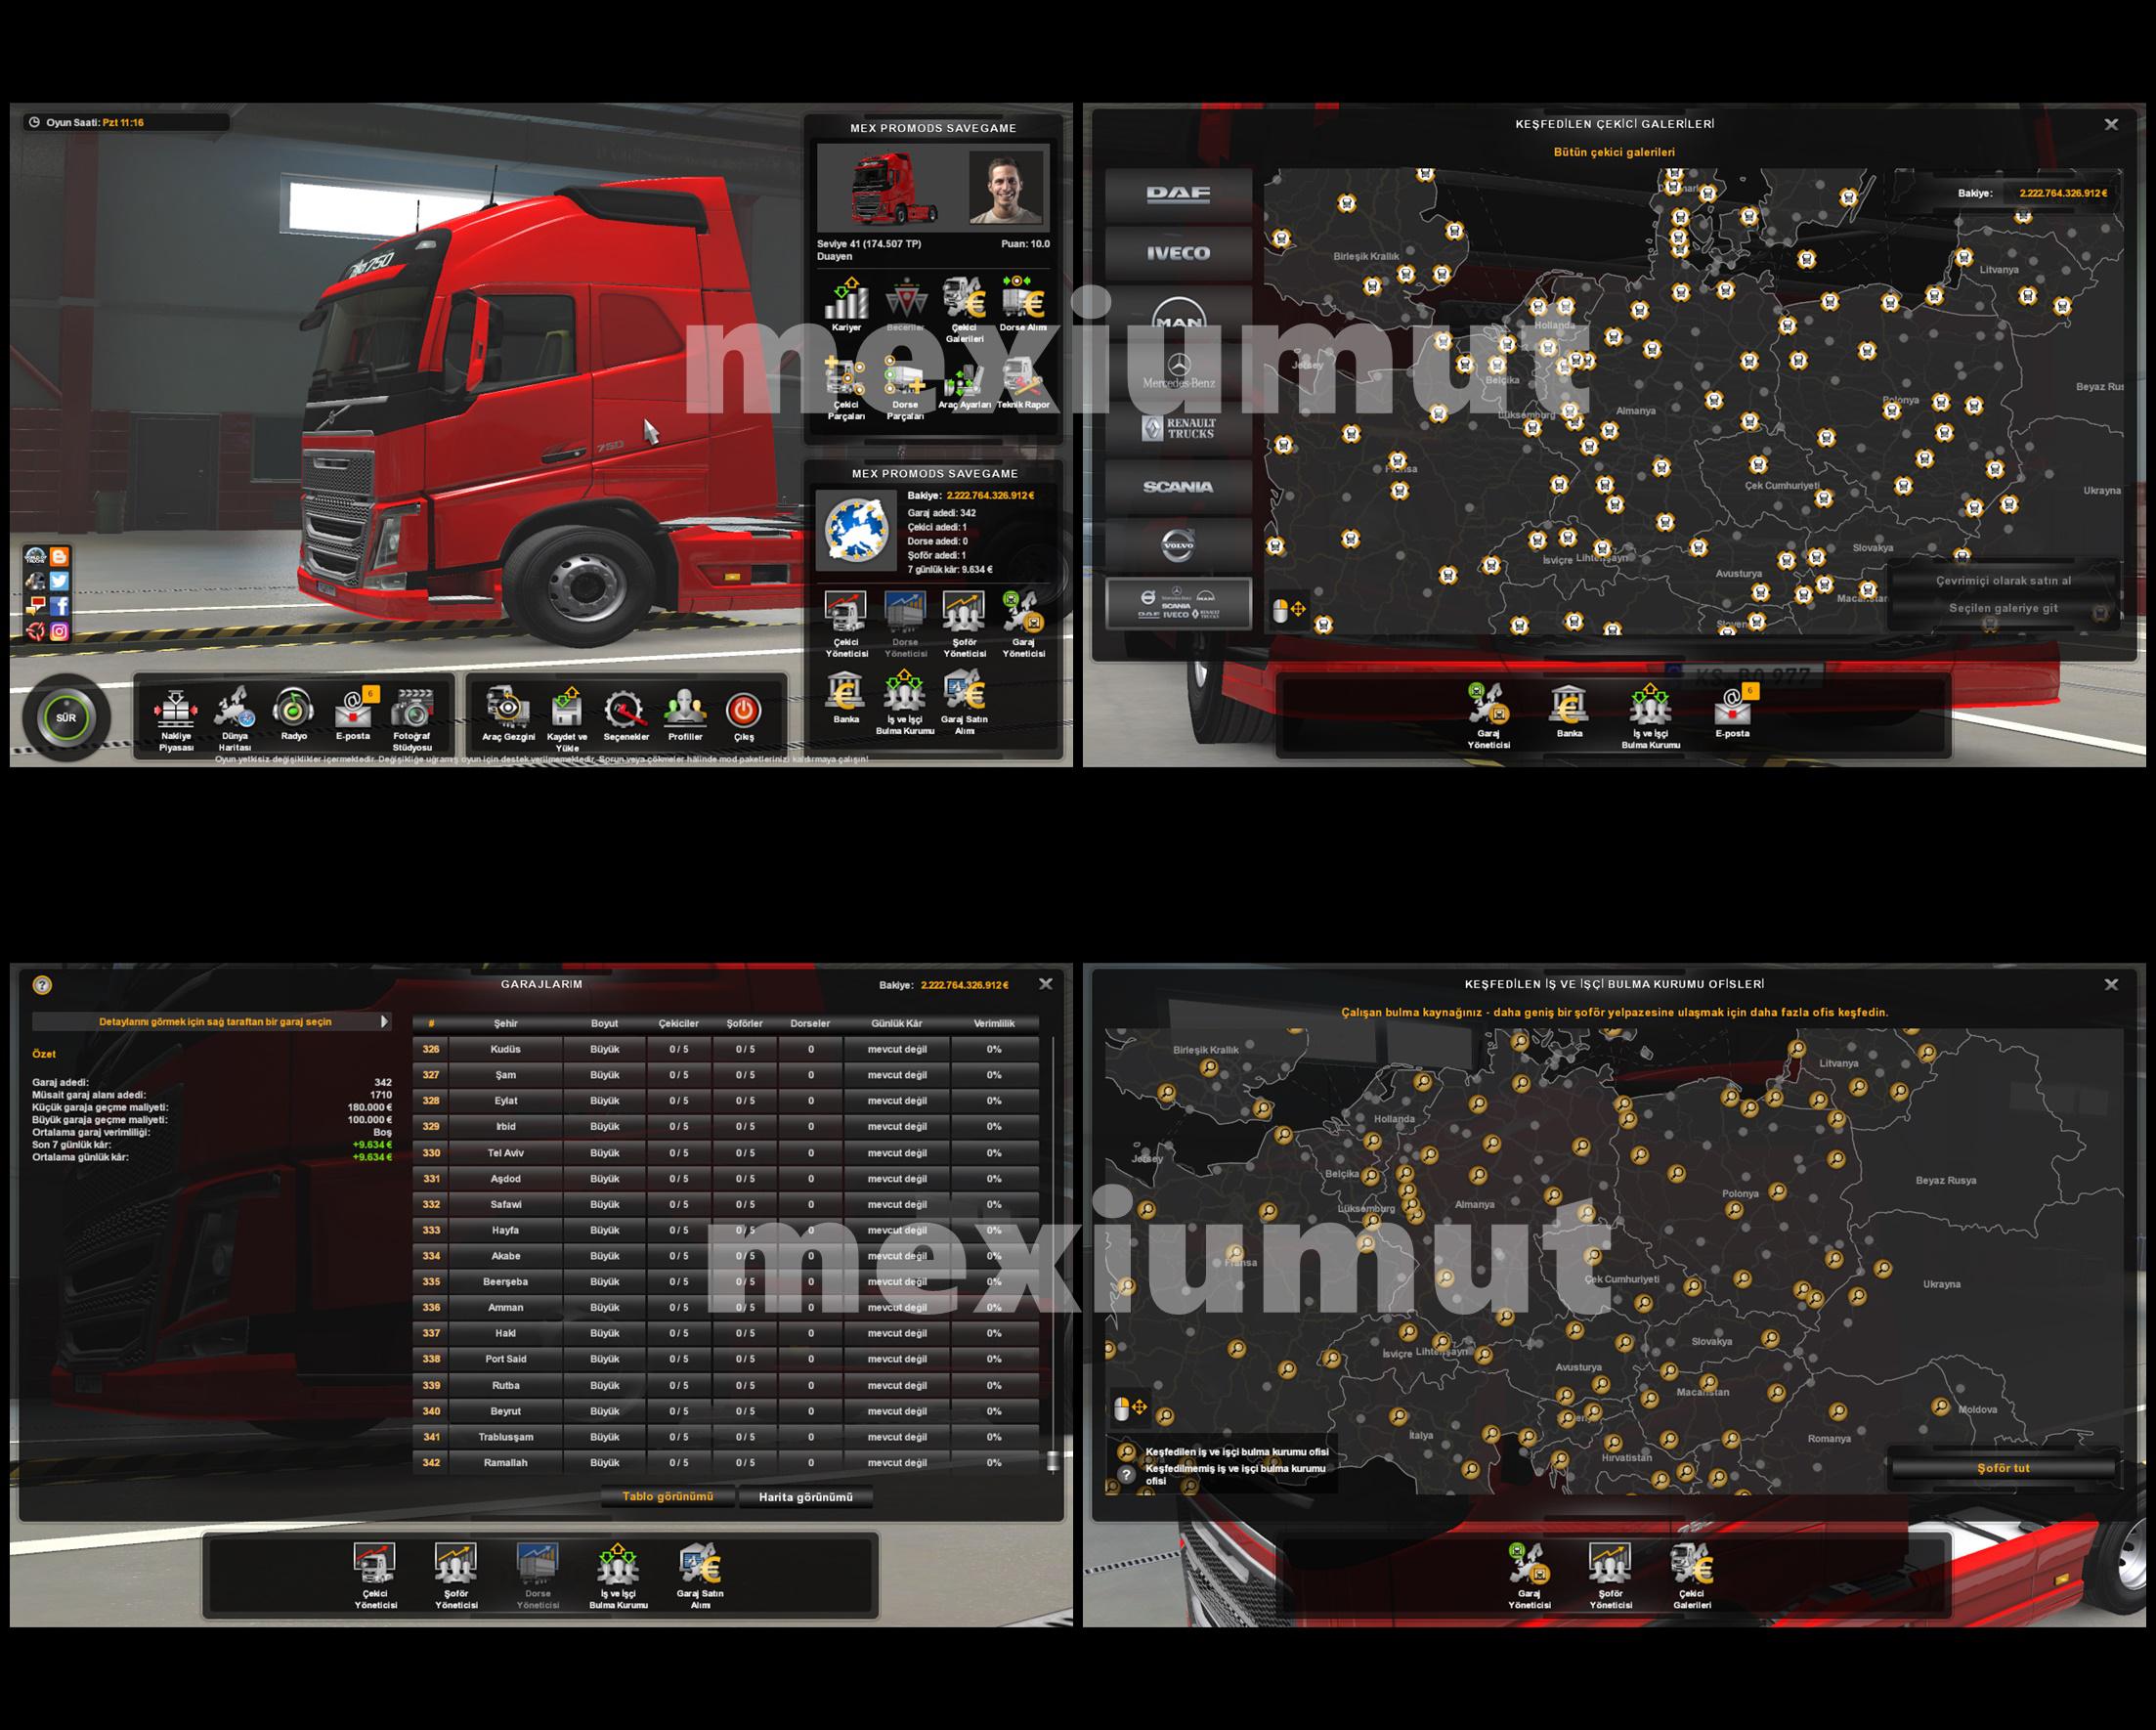 euro truck simulator 2 promods compatibility